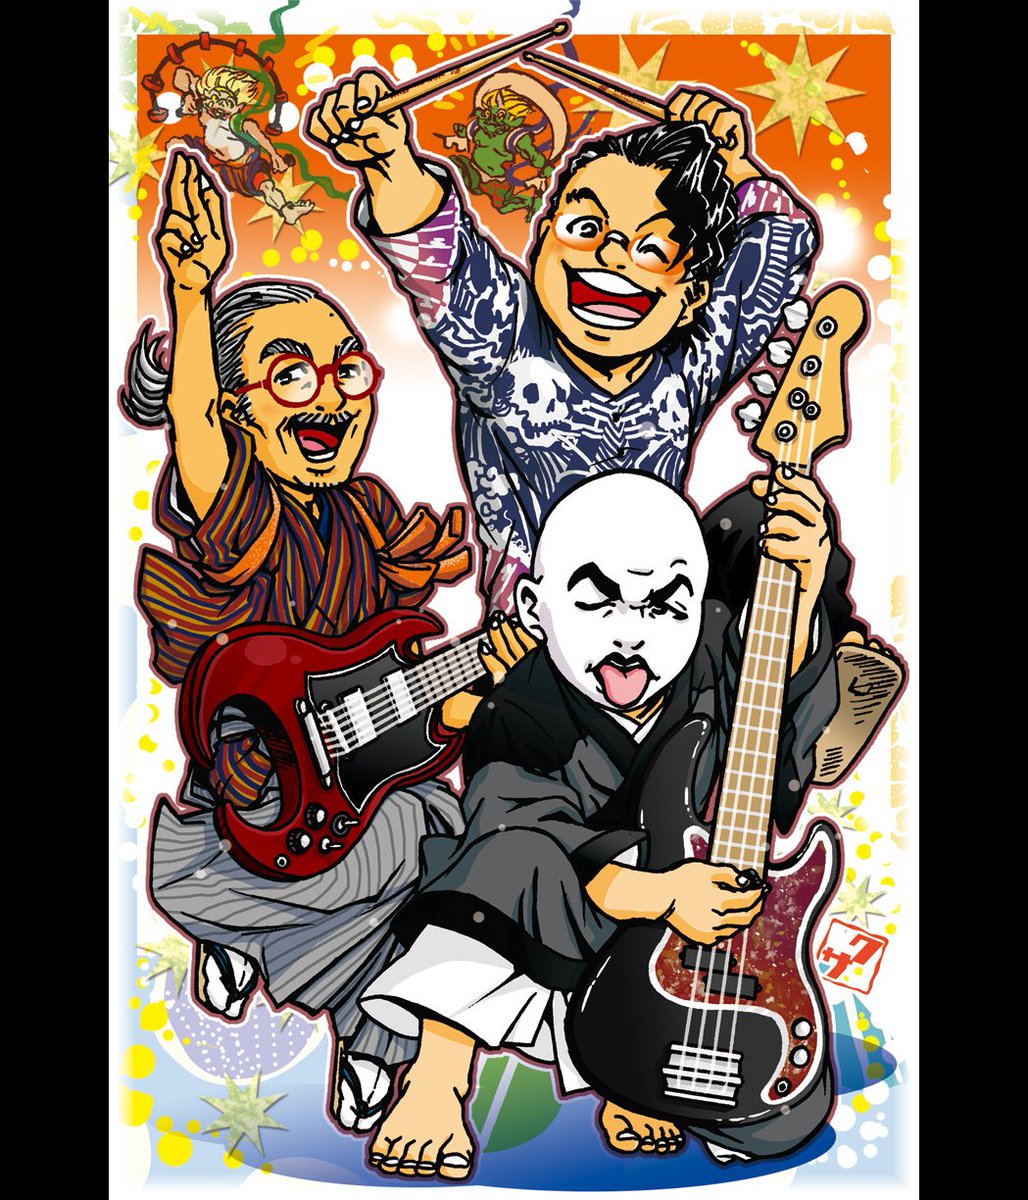 #再掲したらフォロワーが増えるらしい
日本の誇るハードロックバンド #人間椅子 ばっかり描いてます! 